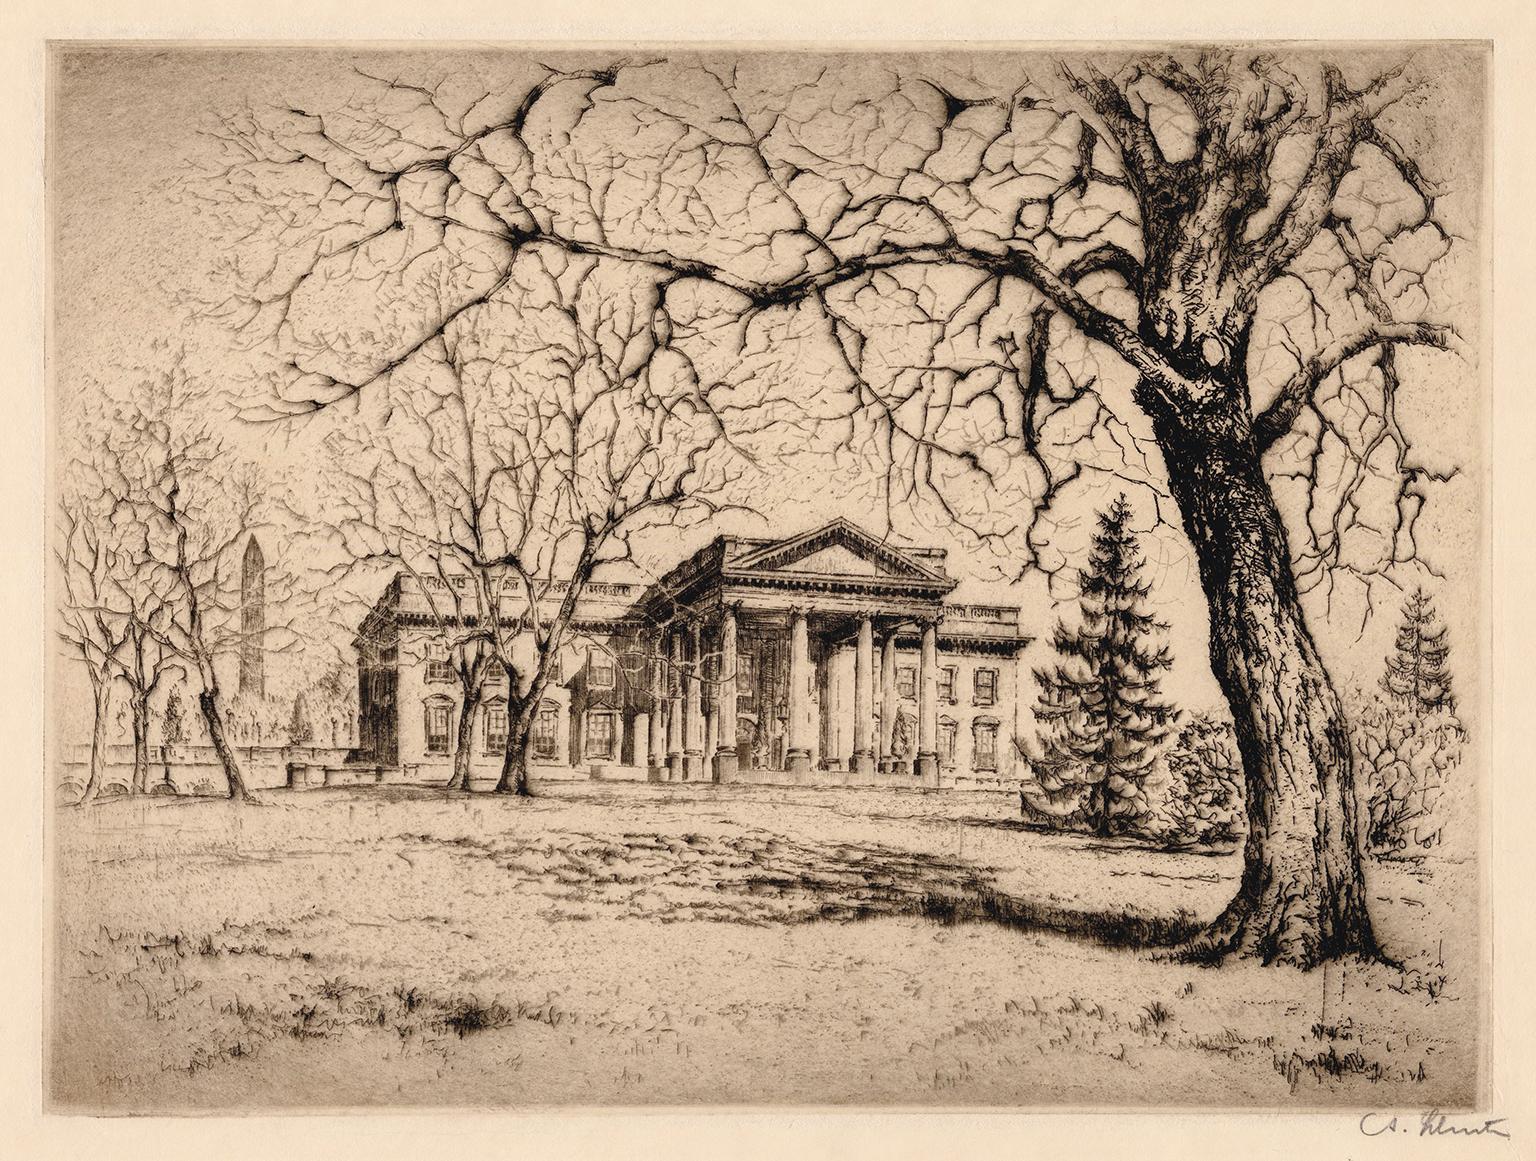 Anton Schutz Landscape Print – The White House" - Realismus der 1920er Jahre, Washington D.C.